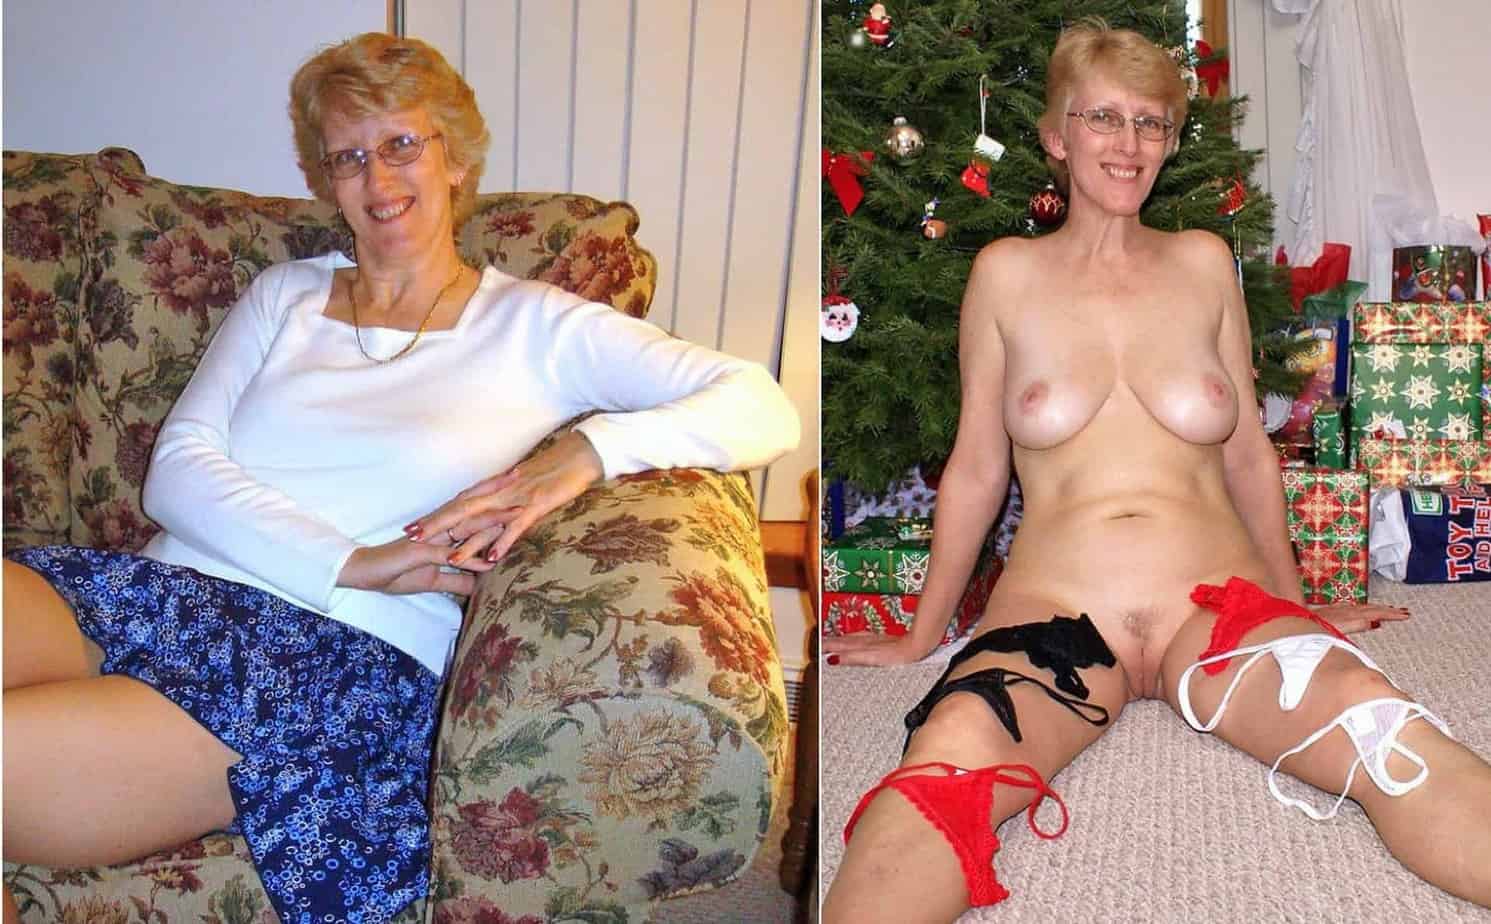 Montage habillées et déshabillées la série de photos sexe qui rend fous